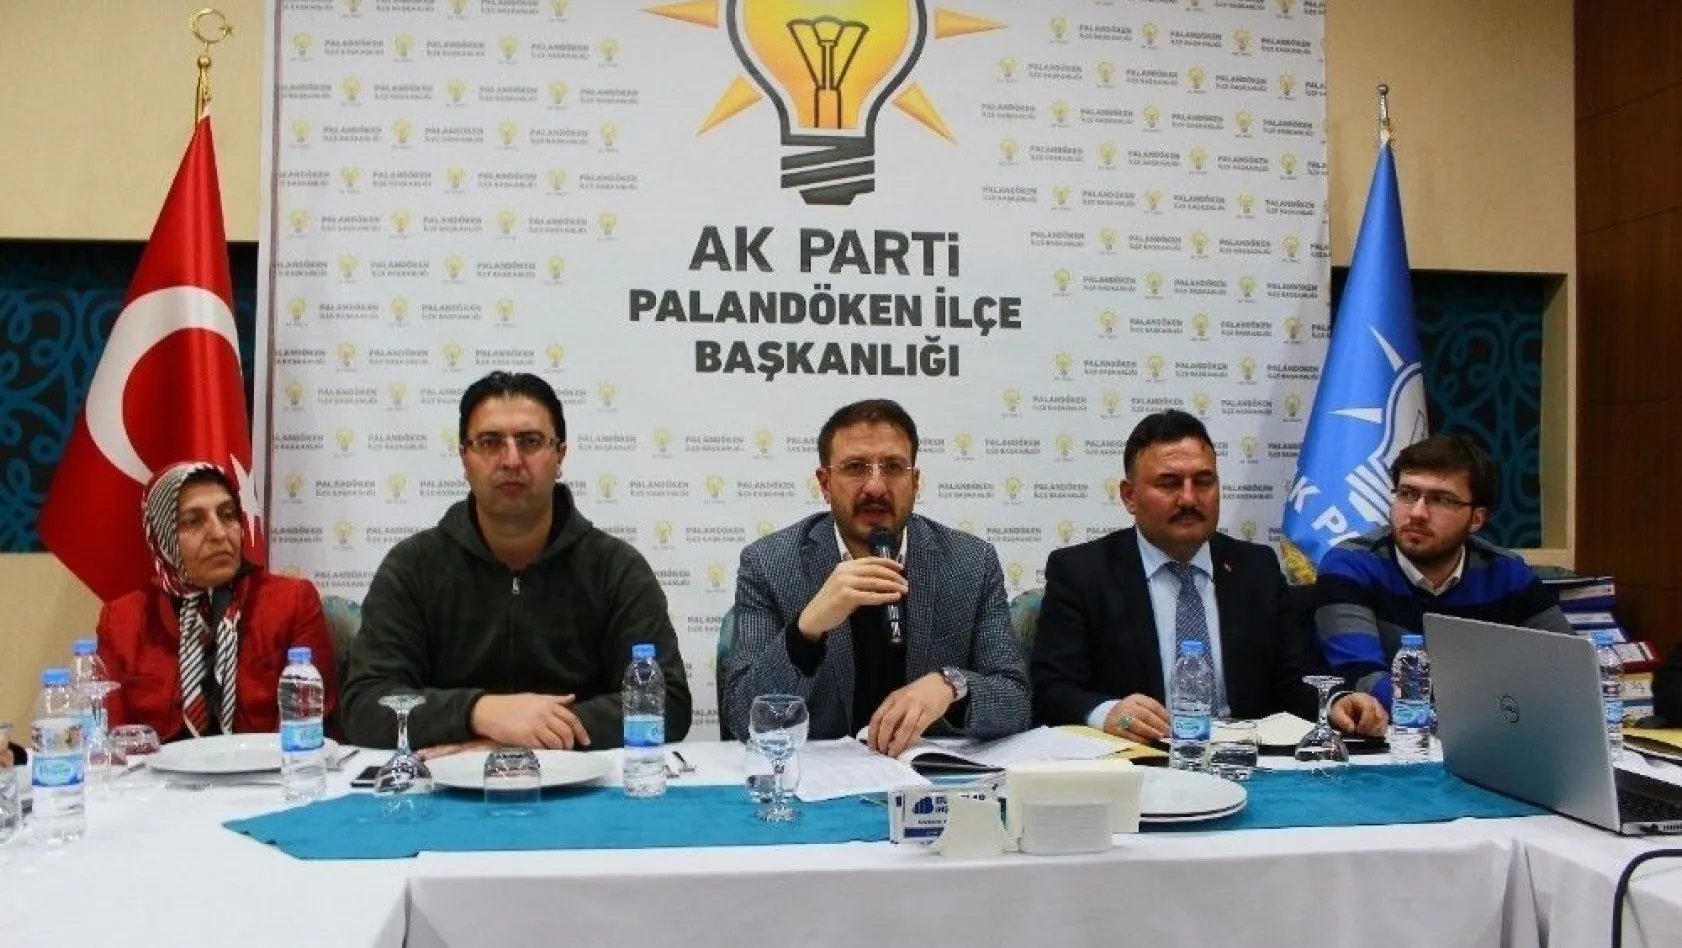 AK Parti Palandöken İlçe Başkanlığı basın ile buluştu
